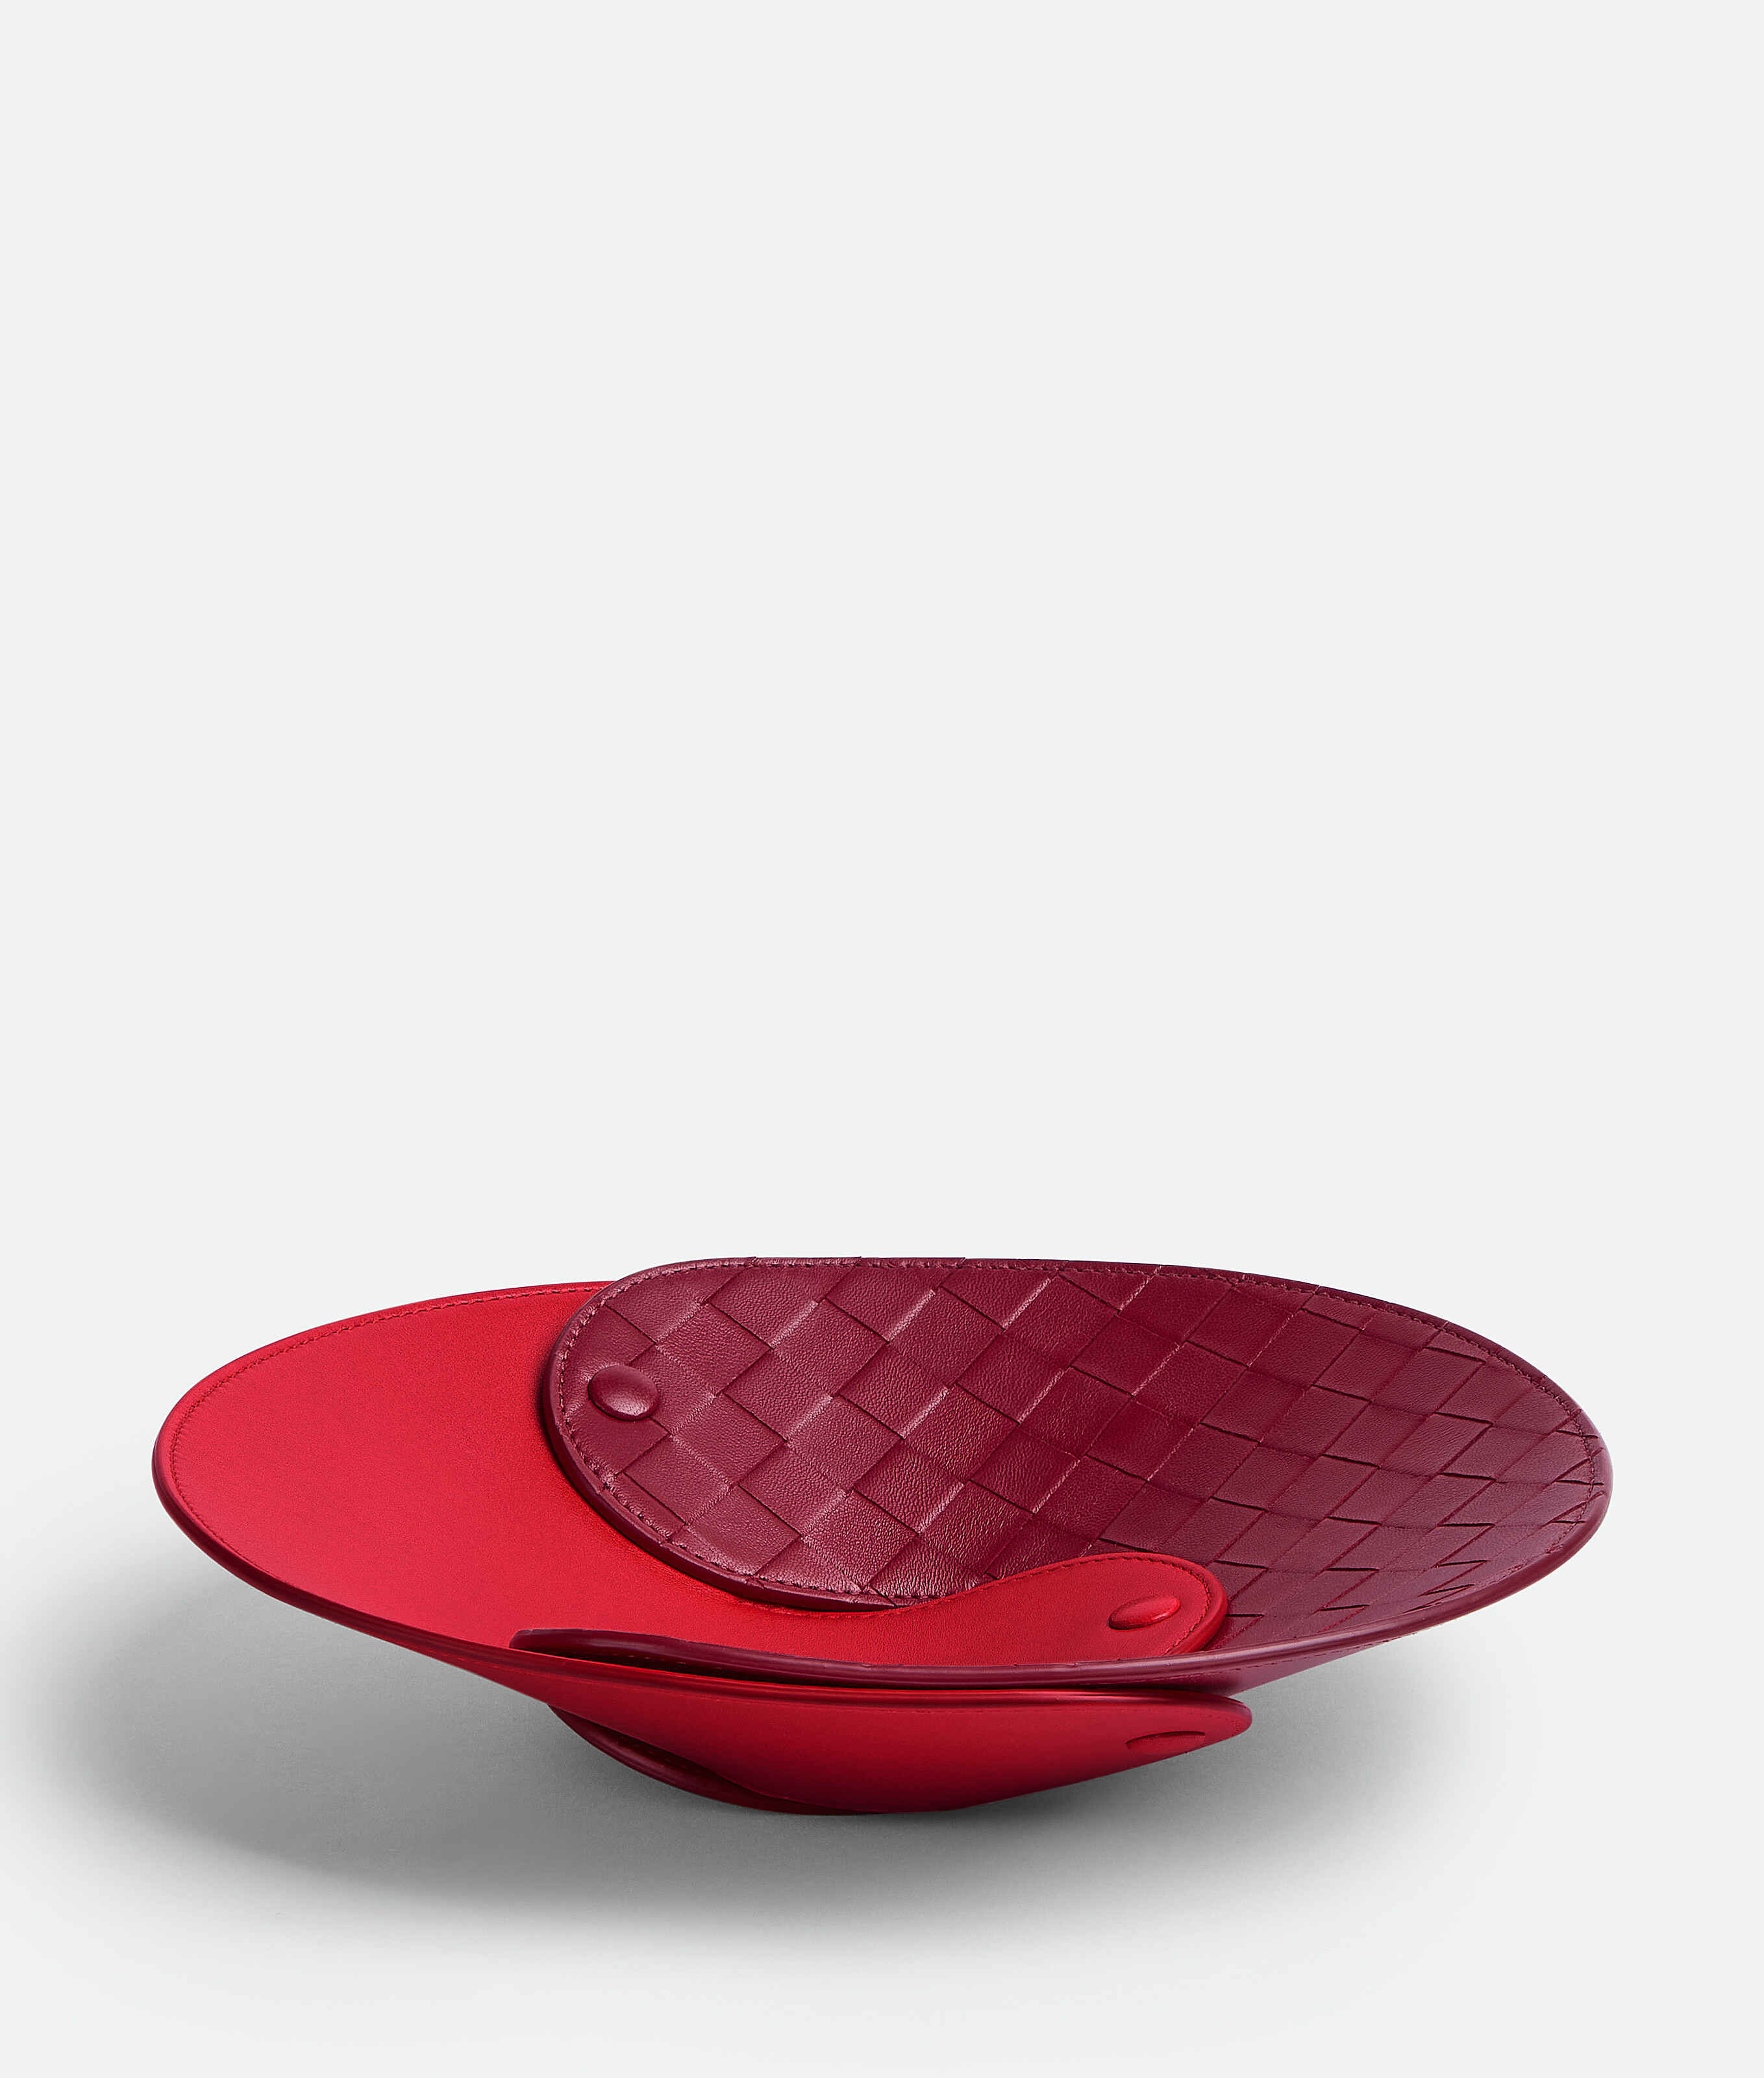 Bottega Veneta Interlocking Leather Tray In Vernis/dark Red